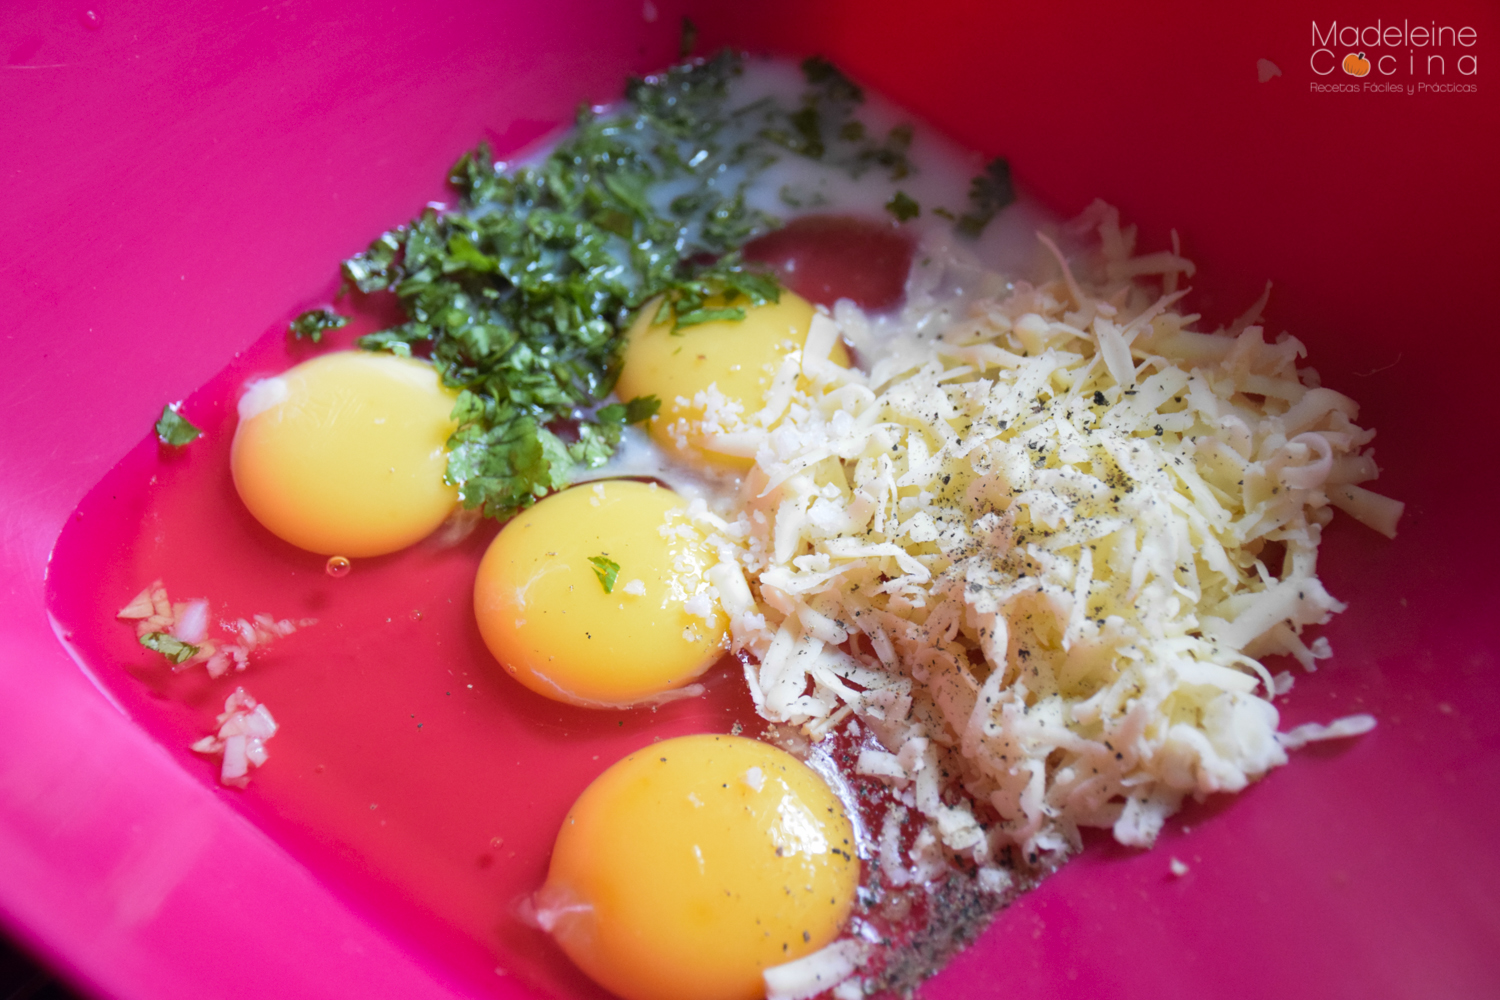 Gratín de papas ralladas con jamón, huevos y cebolla | Madeleine Cocina